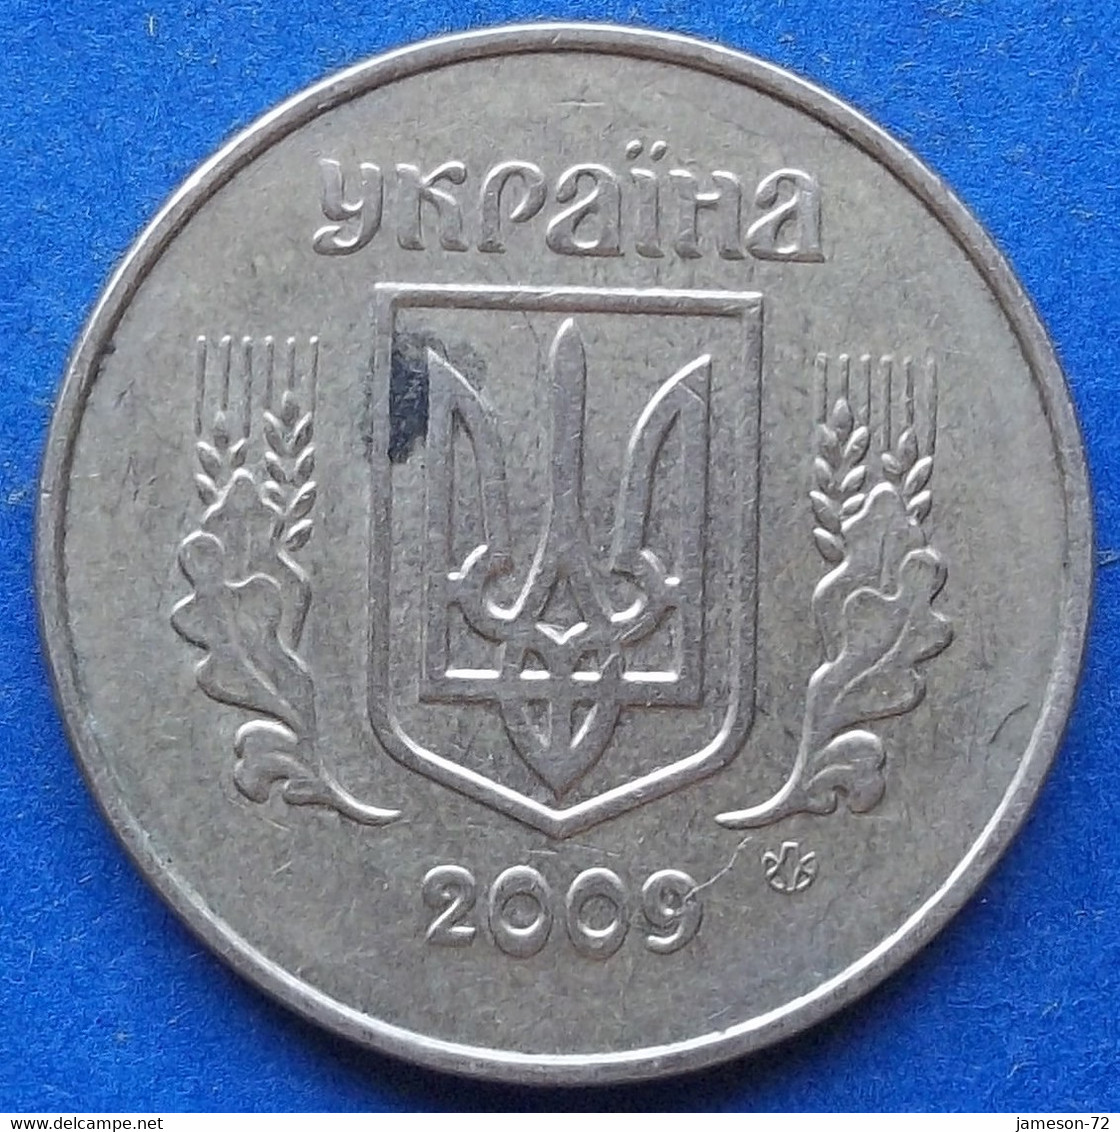 UKRAINE - 50 Kopiyok 2009 KM# 3.3b Reform Coinage (1996) - Edelweiss Coins - Ukraine